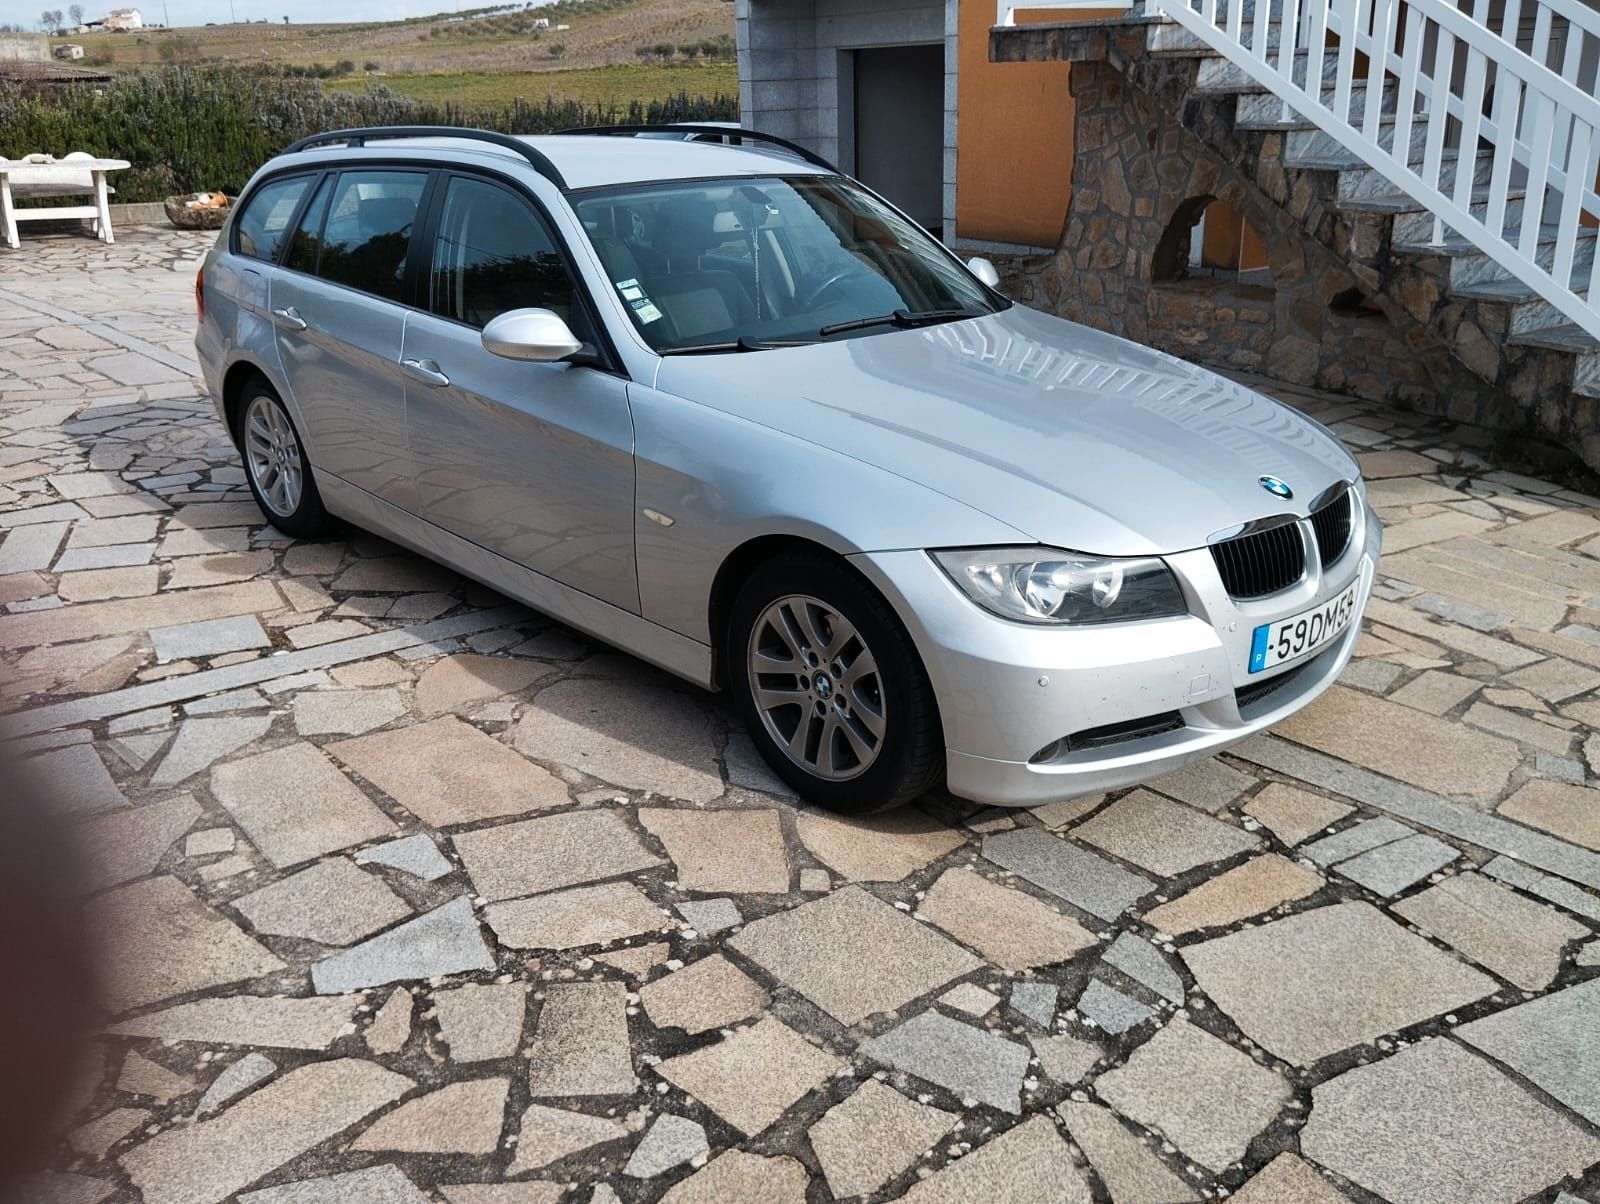 BMW 320d, 163cv, 180mil km, nacional, selo antigo.